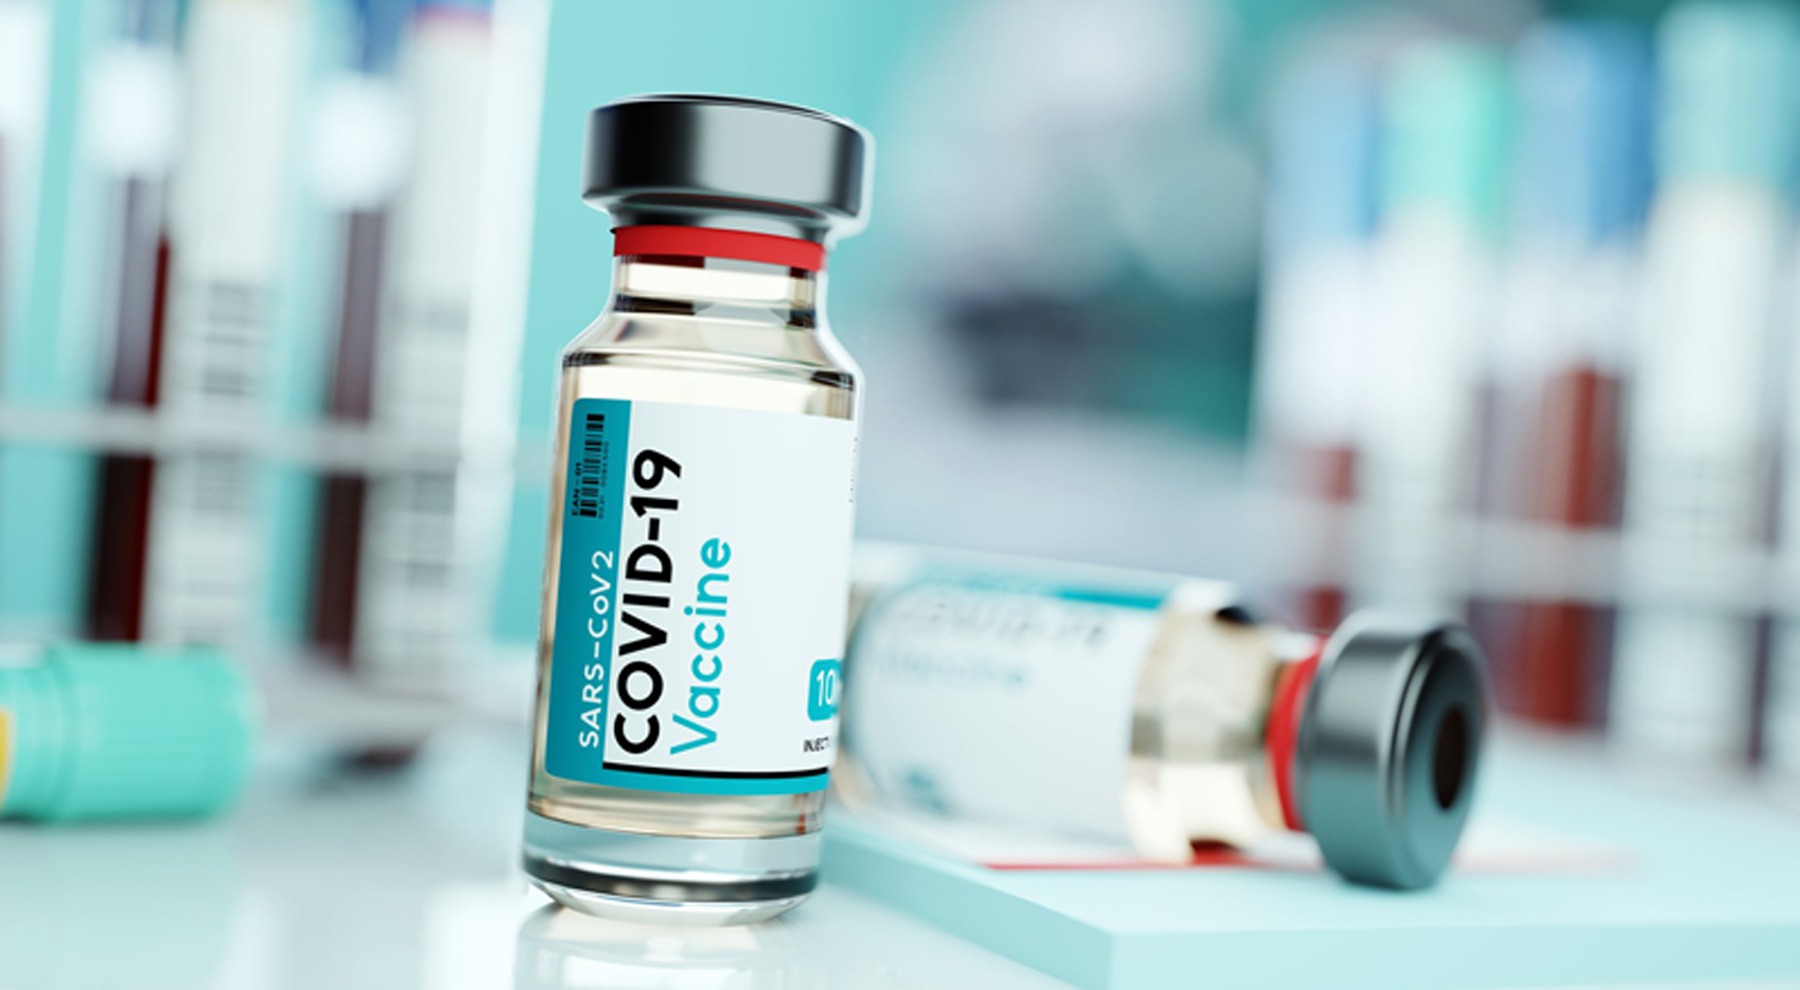 عضو کمیته علمی مبارزه با کرونا: واکسیناسیون کرونا سالی دوبار انجام می شود